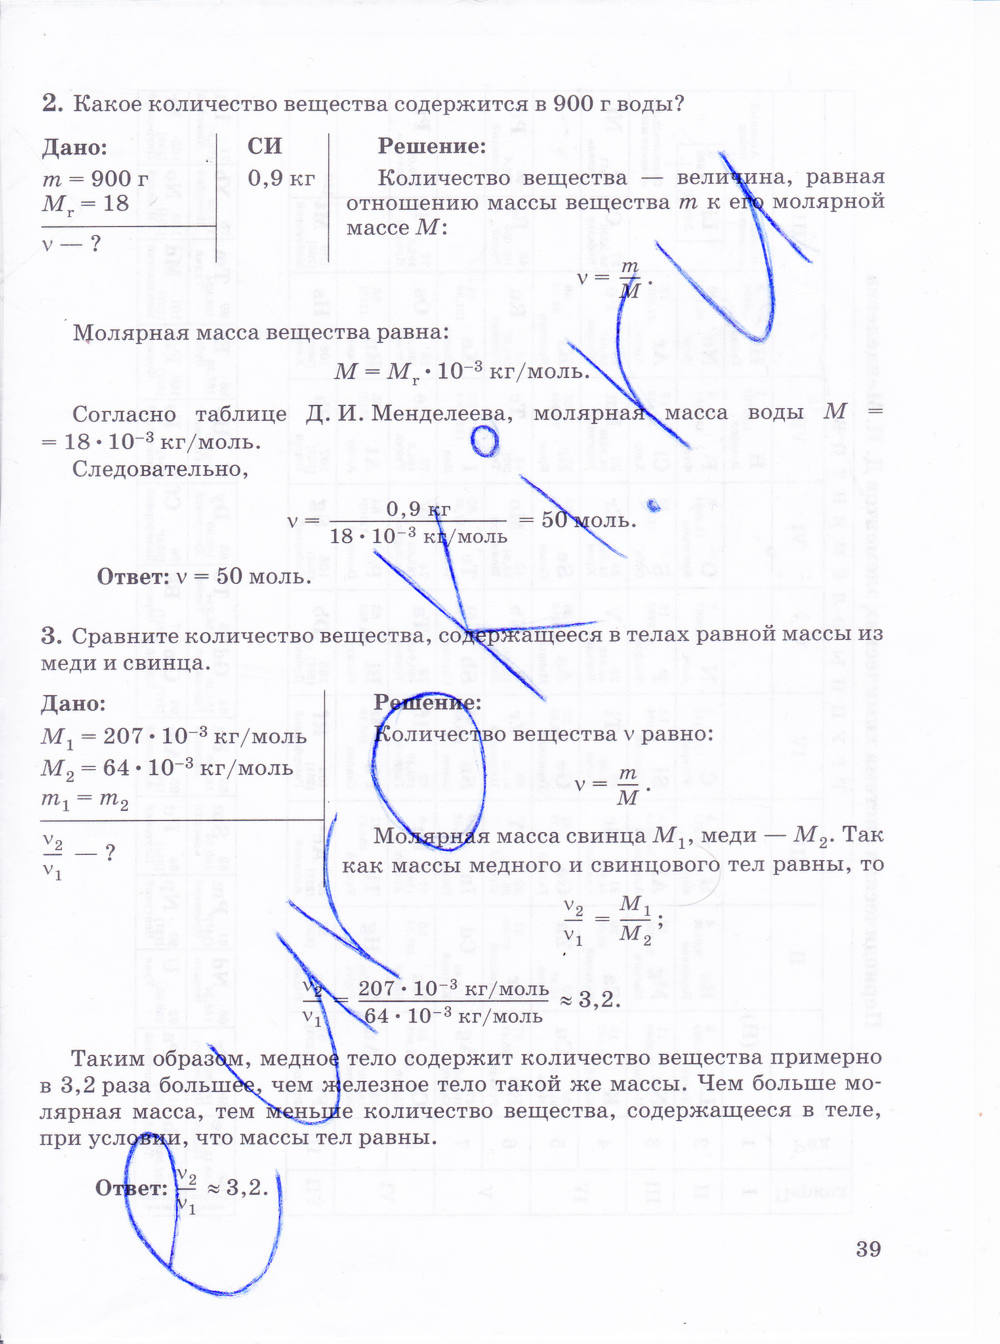 Ответы на лабораторную по физике 9. Физика 10 класс тетрадь Губанов ответы. Контрольные задания по физике 10 класс Губанов ответы. Контрольные задания физика 10 класс Губанов. Физика 10 класс рабочая тетрадь.